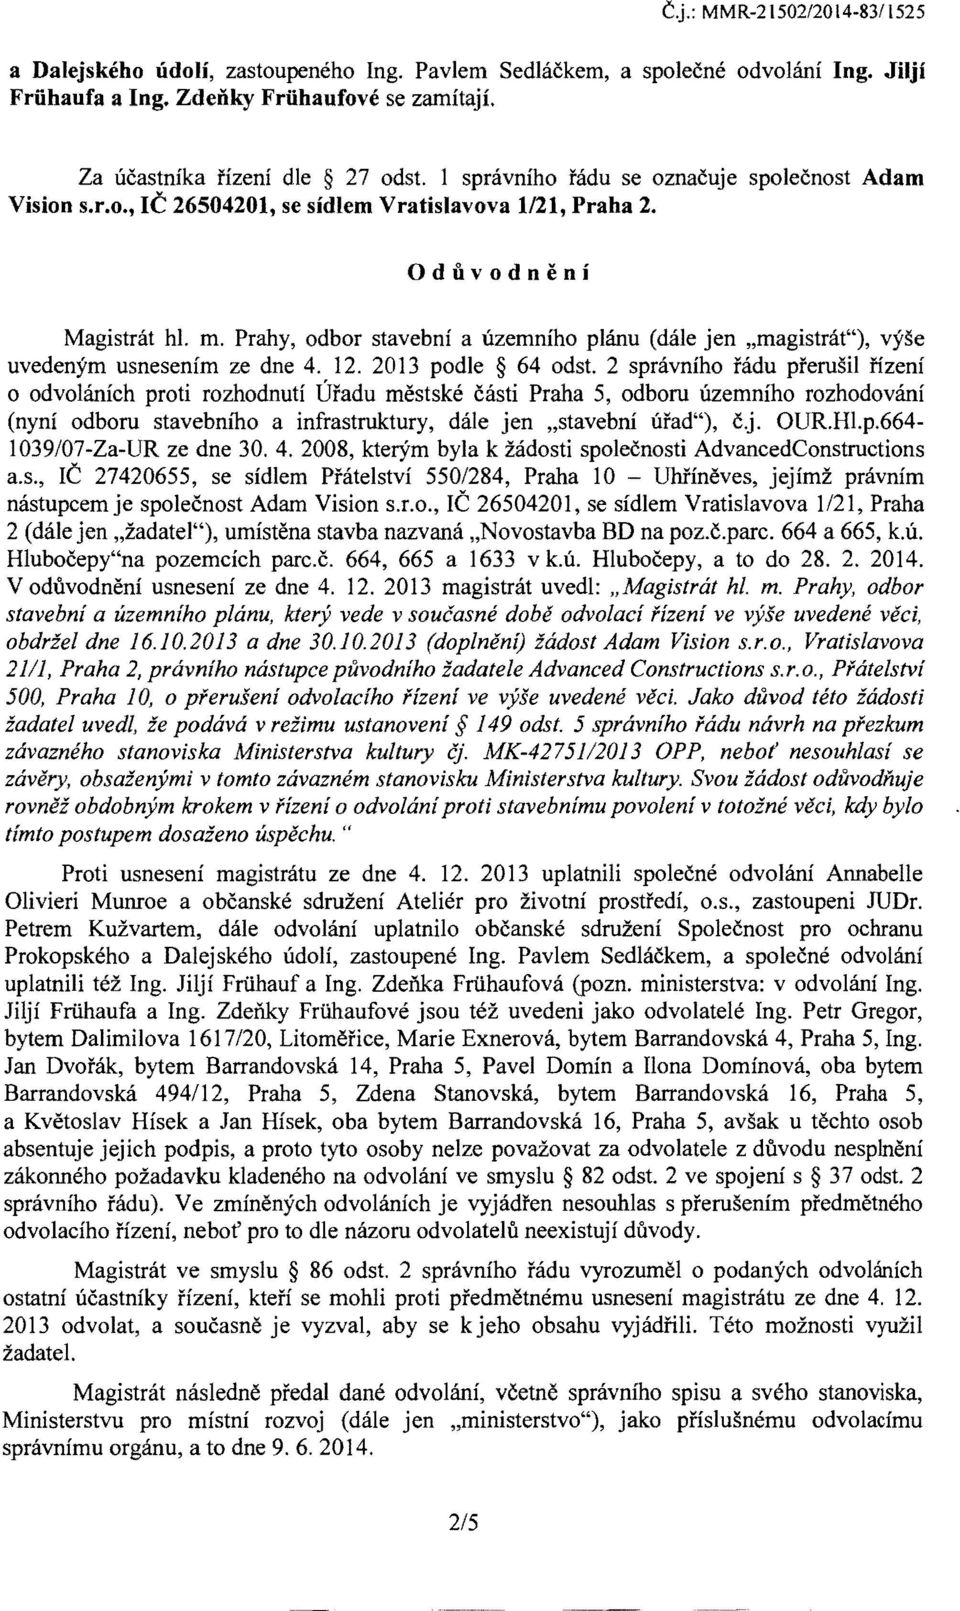 Prahy, odbor stavebni a ilzemniho planu (dale jen "magistrat"), vyse uvedenym usnesenim ze dne 4. 12. 2013 podle 64 odst.